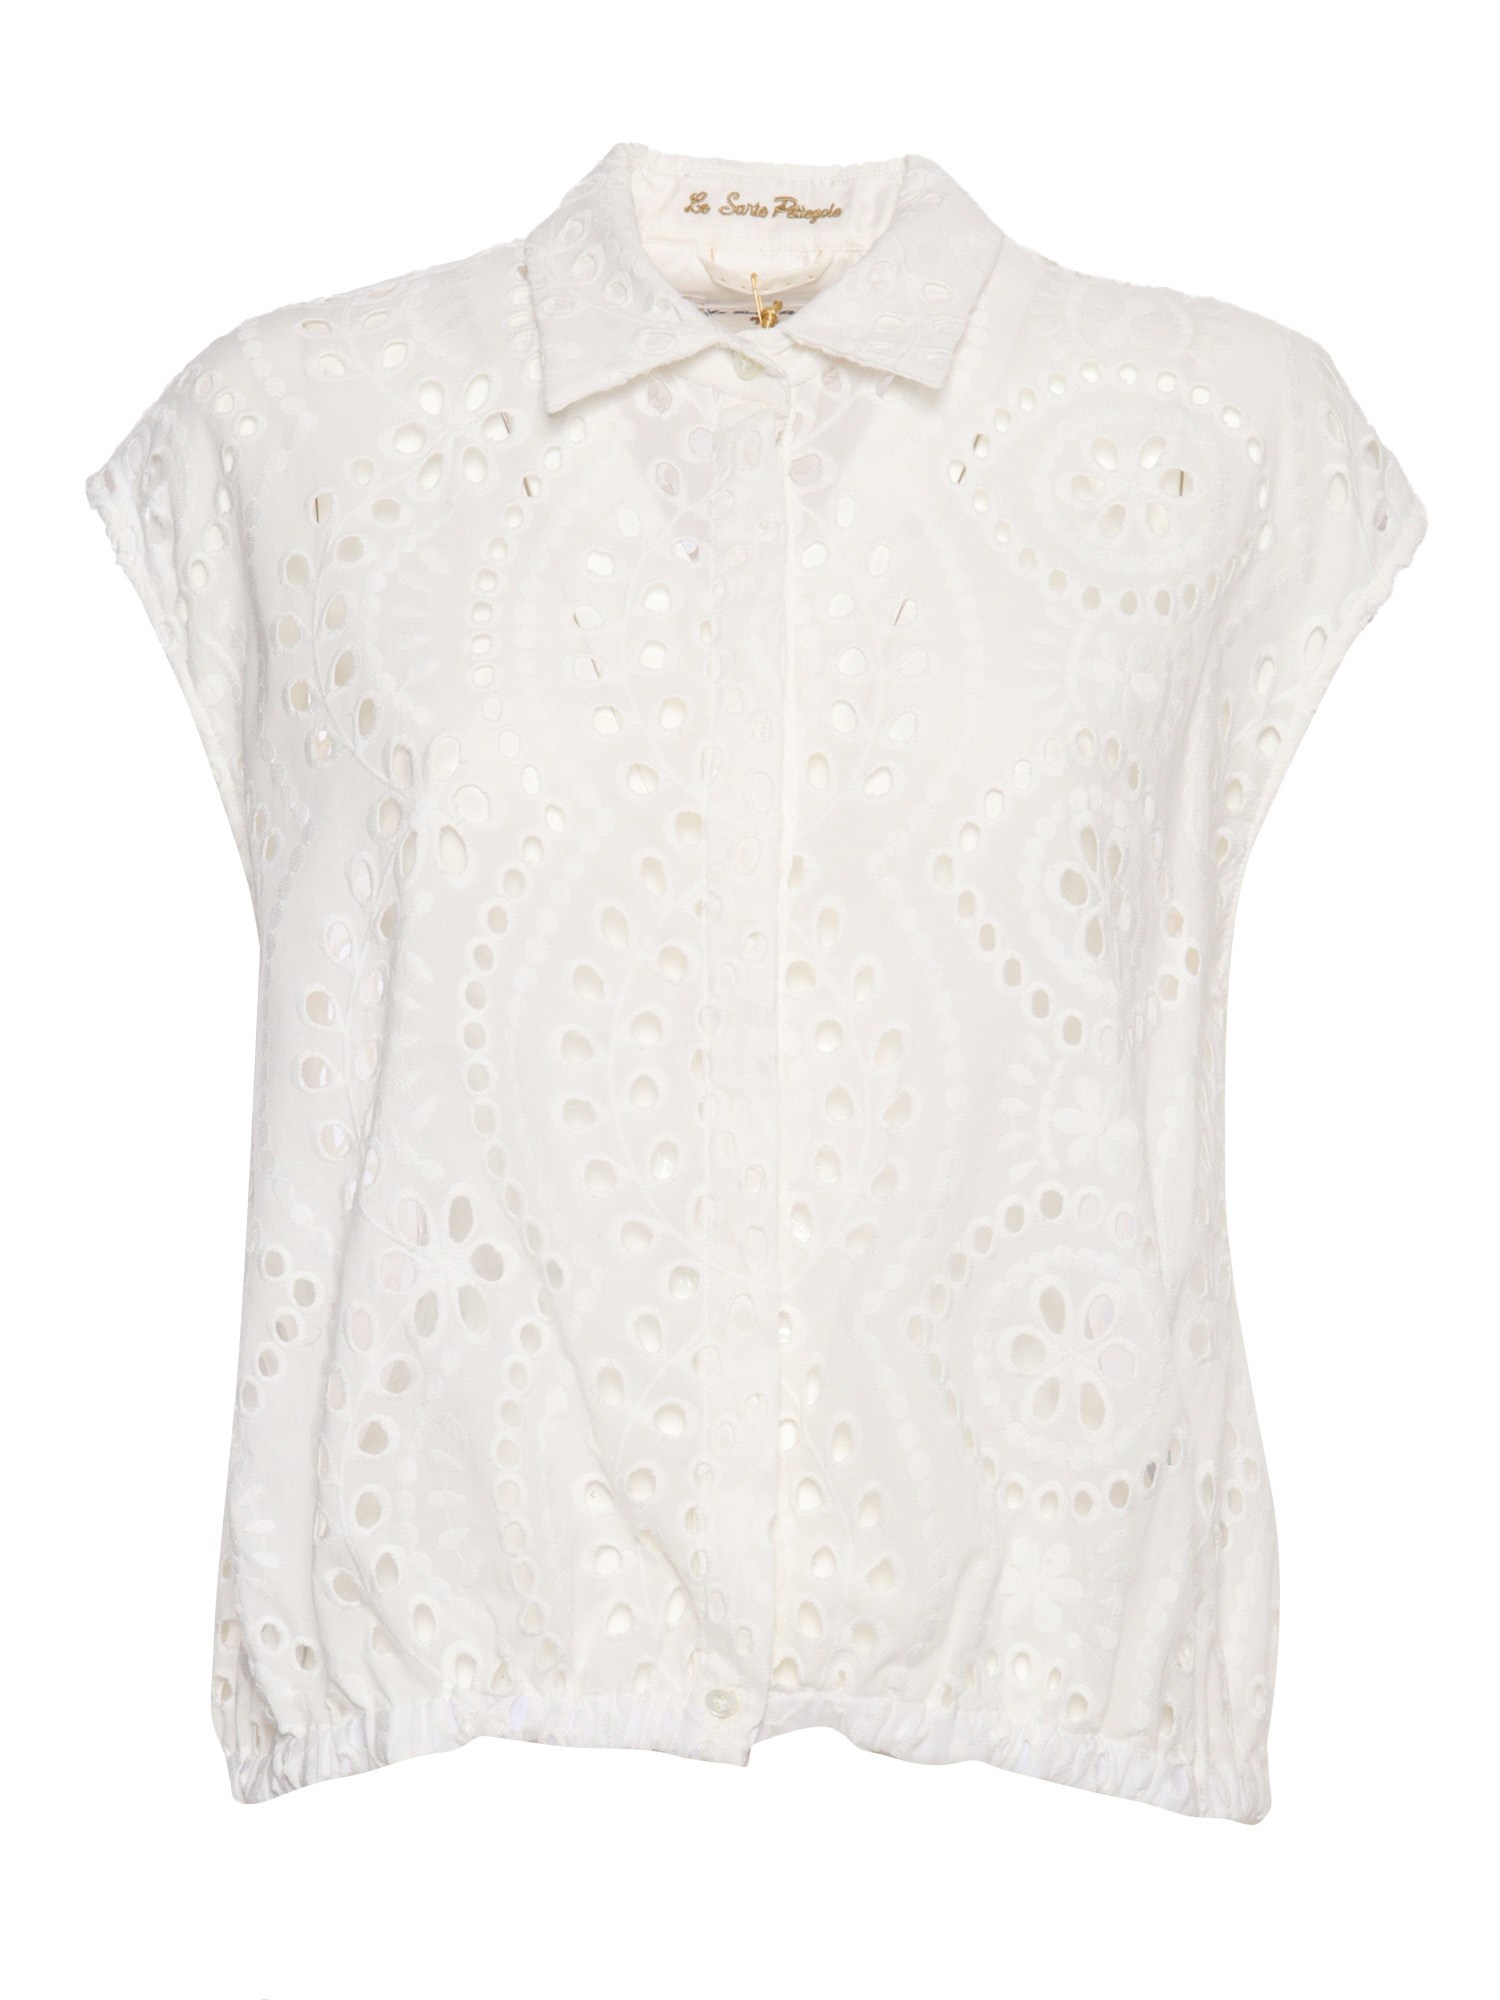 Shop Le Sarte Pettegole White Lace Shirt